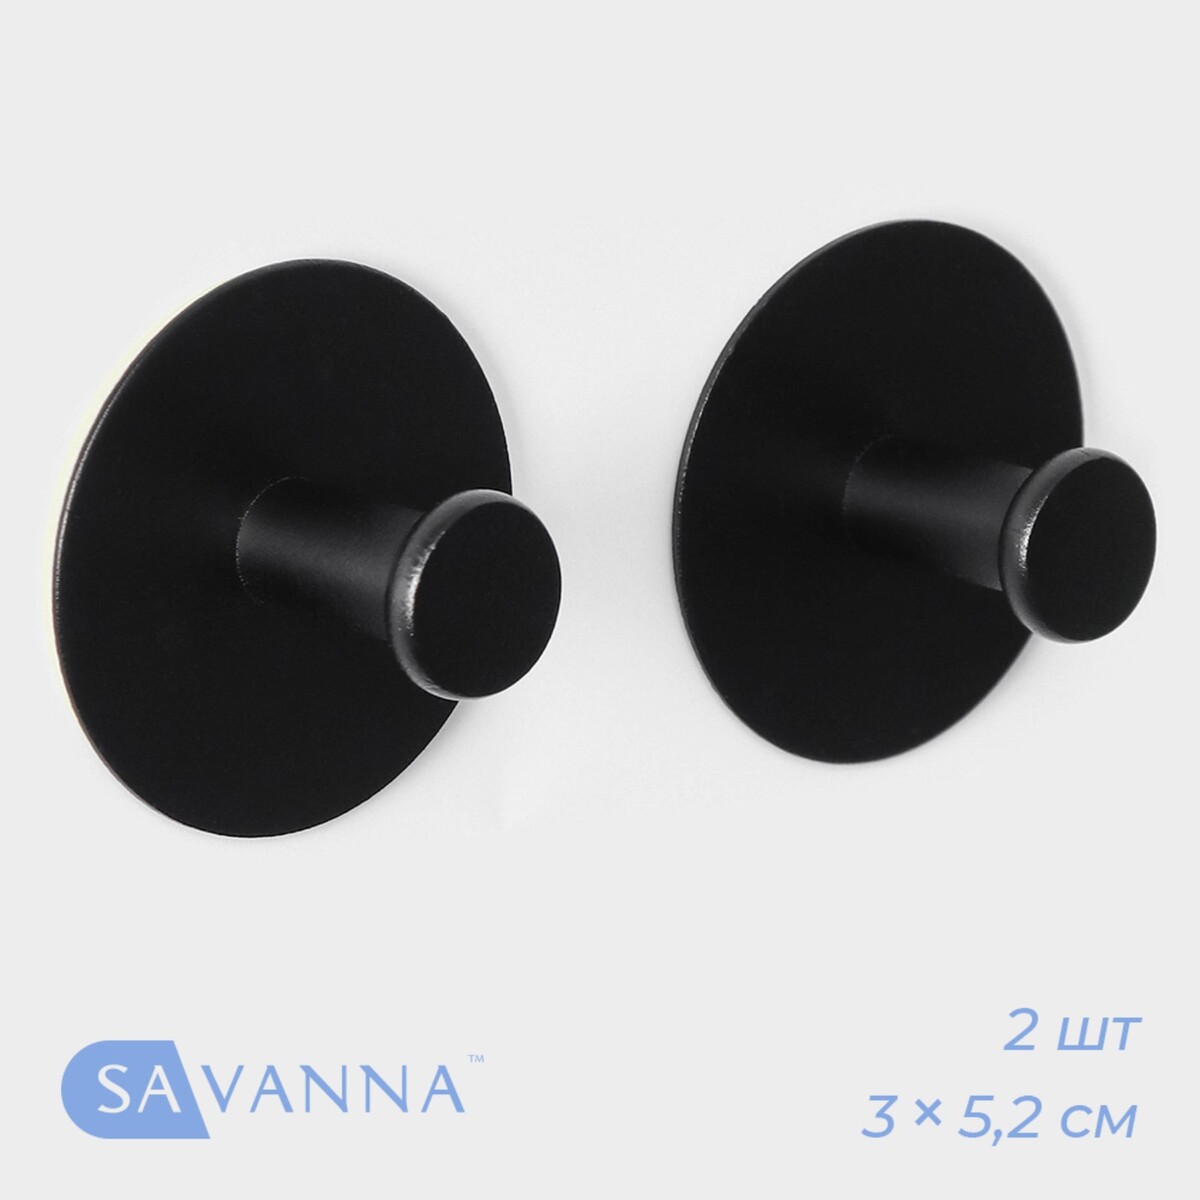 Набор металлических самоклеящихся крючков savanna black loft grip, 2 шт, 3×5,2 см набор для игры ogosport ogodisk grip flux ball rq017